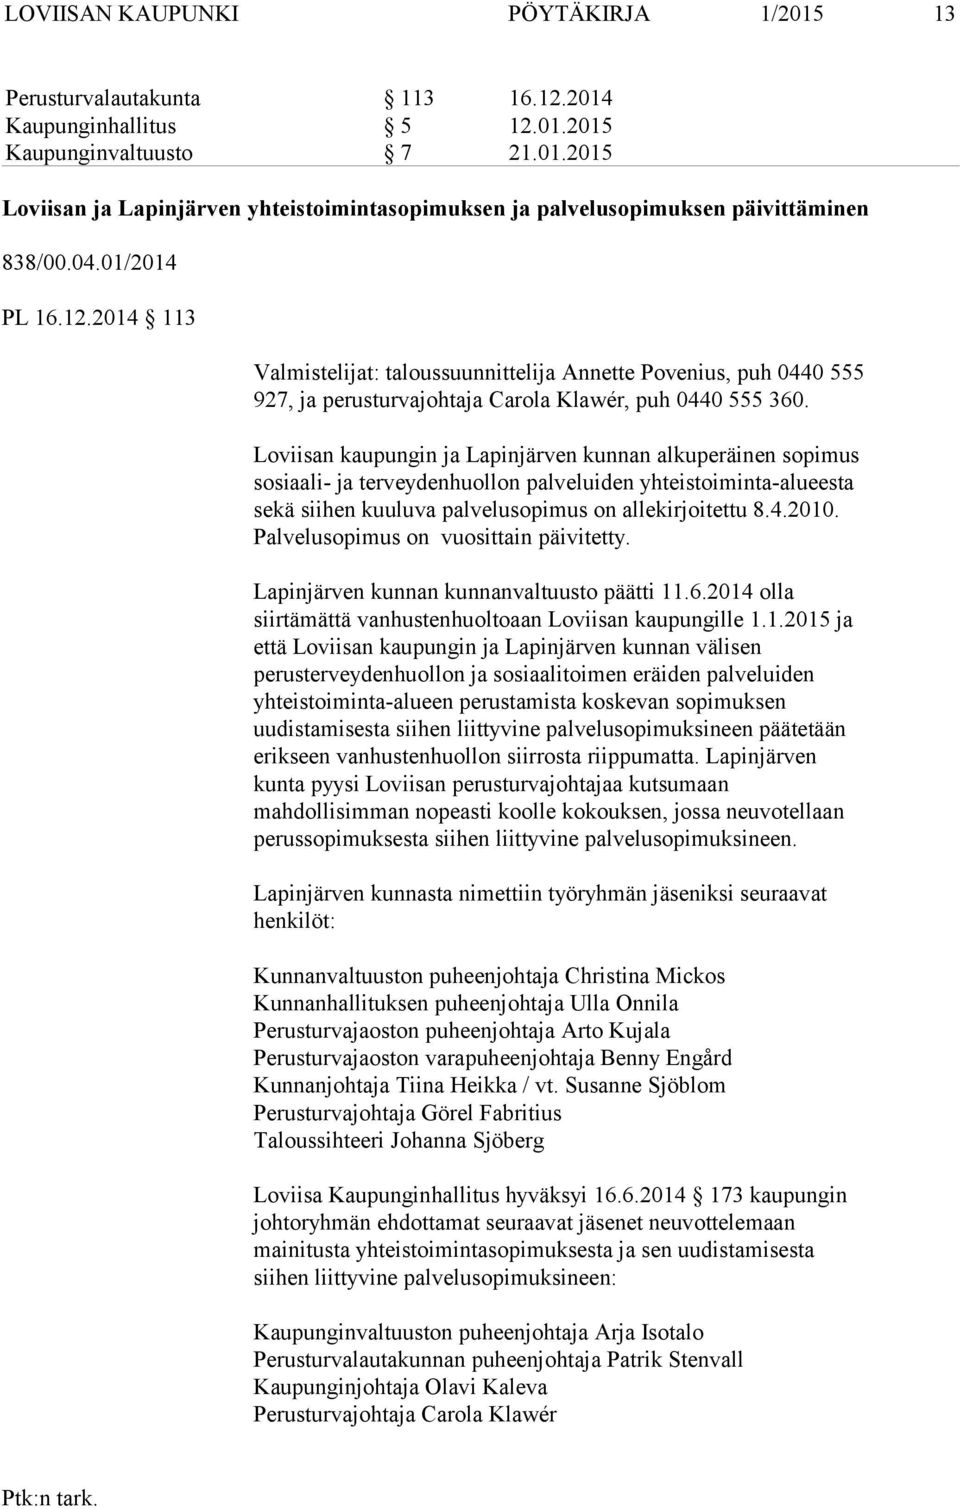 Loviisan kaupungin ja Lapinjärven kunnan alkuperäinen sopimus sosiaali- ja terveydenhuollon palveluiden yhteistoiminta-alueesta sekä siihen kuuluva palvelusopimus on allekirjoitettu 8.4.2010.